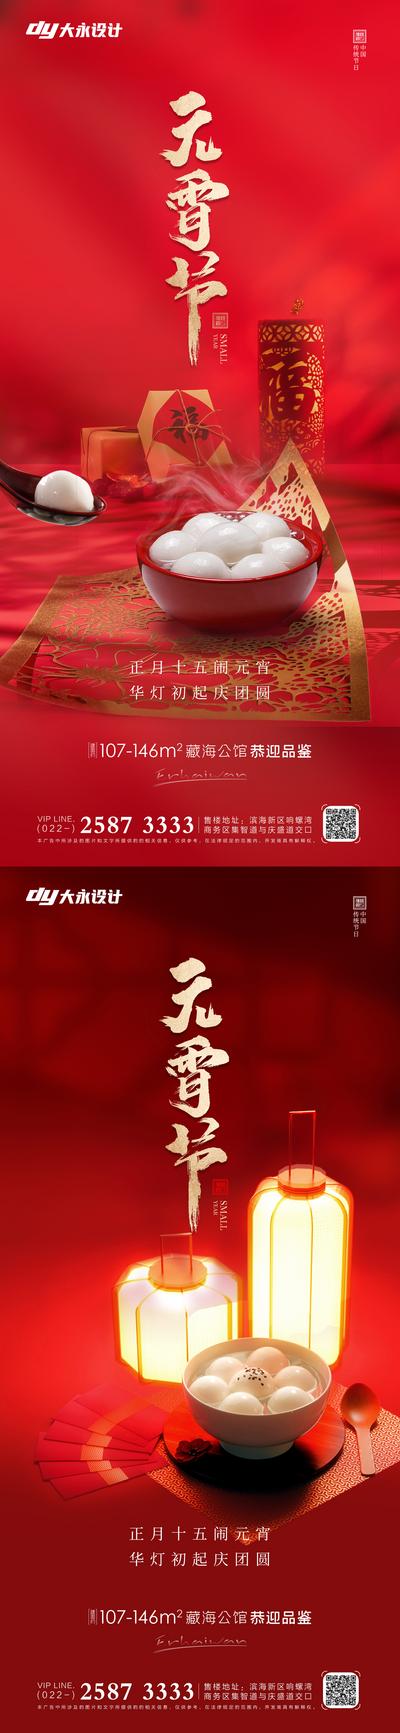 南门网 海报 房地产 中国传统节日 元宵节 灯笼 剪纸 红金